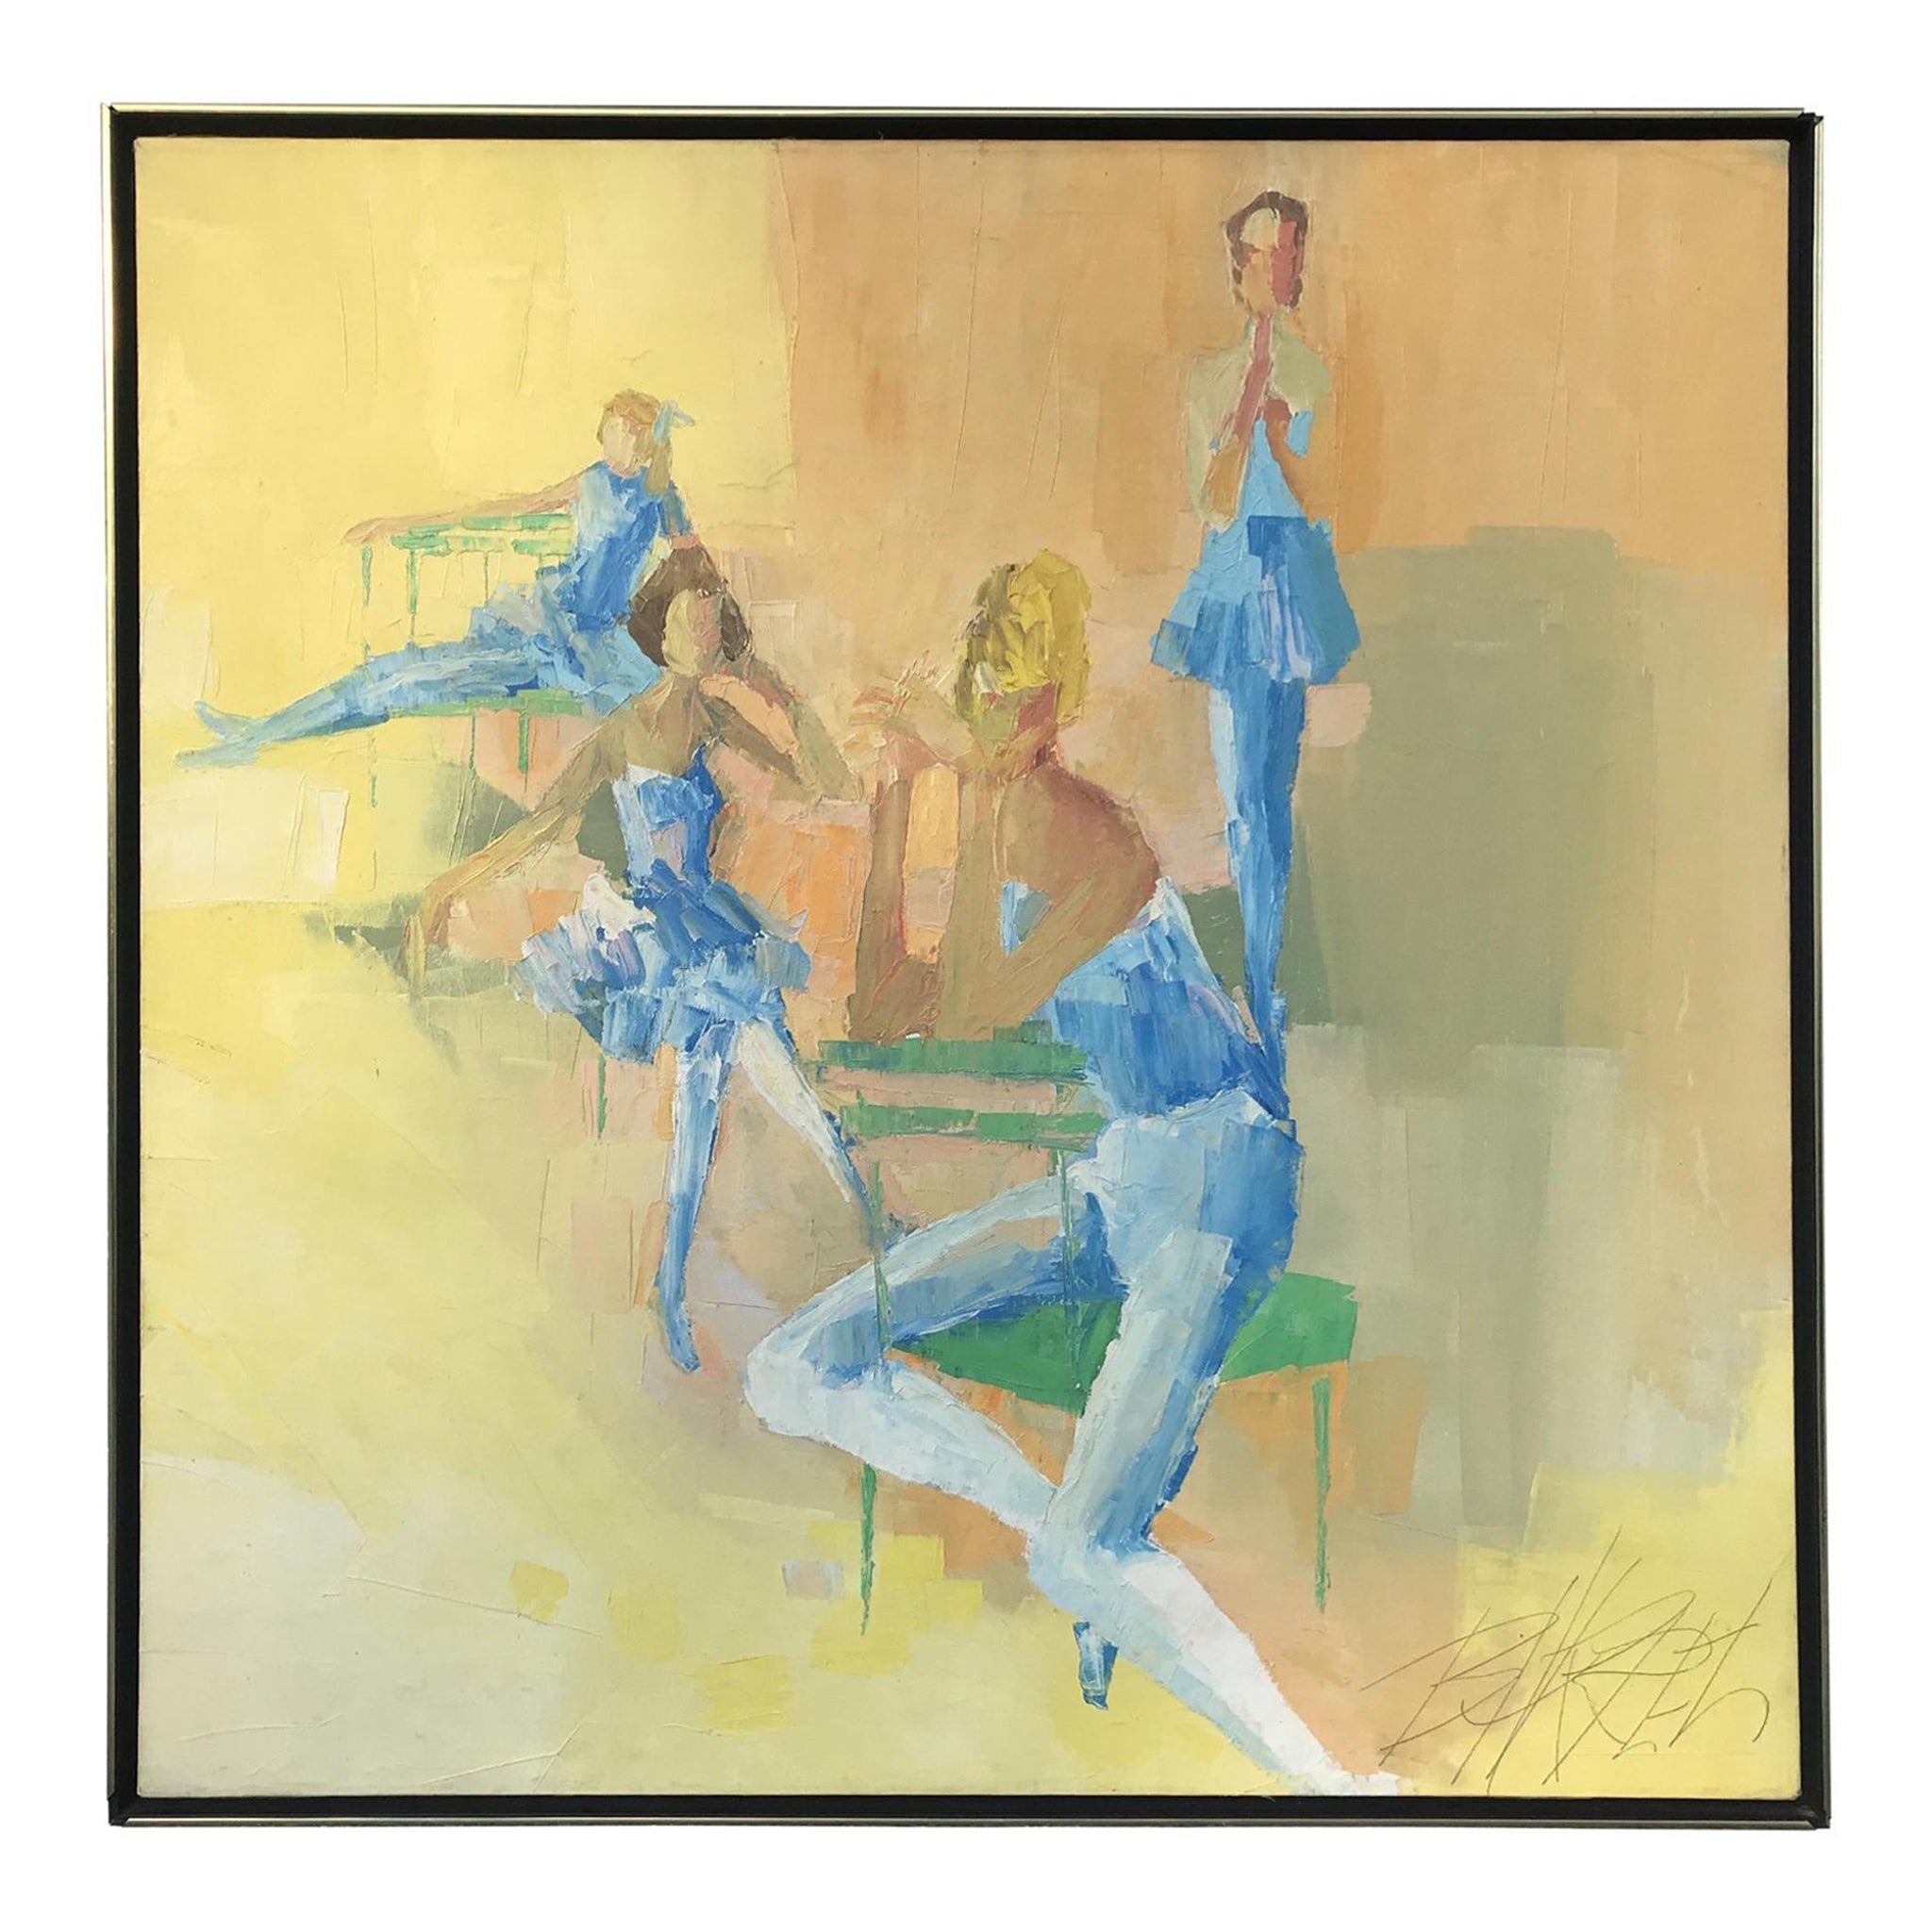 Original-Ölgemälde von George Barrel auf Leinwand, signiert, Ballerina Posing, 1960er Jahre